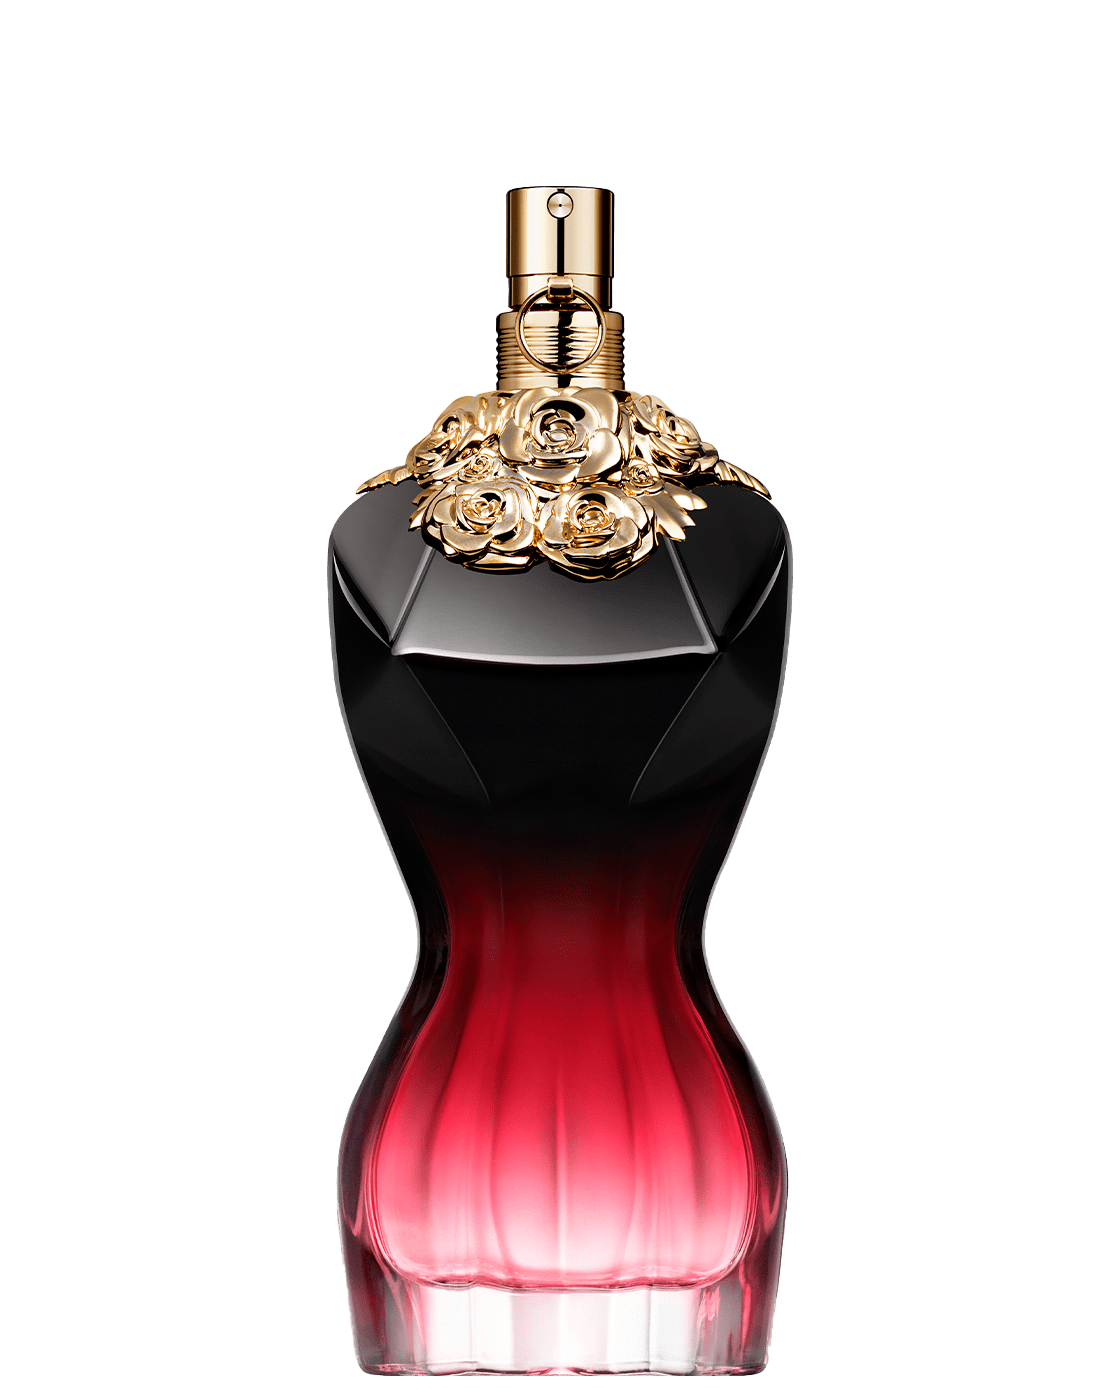 Range La Belle Eau de Parfum for Women